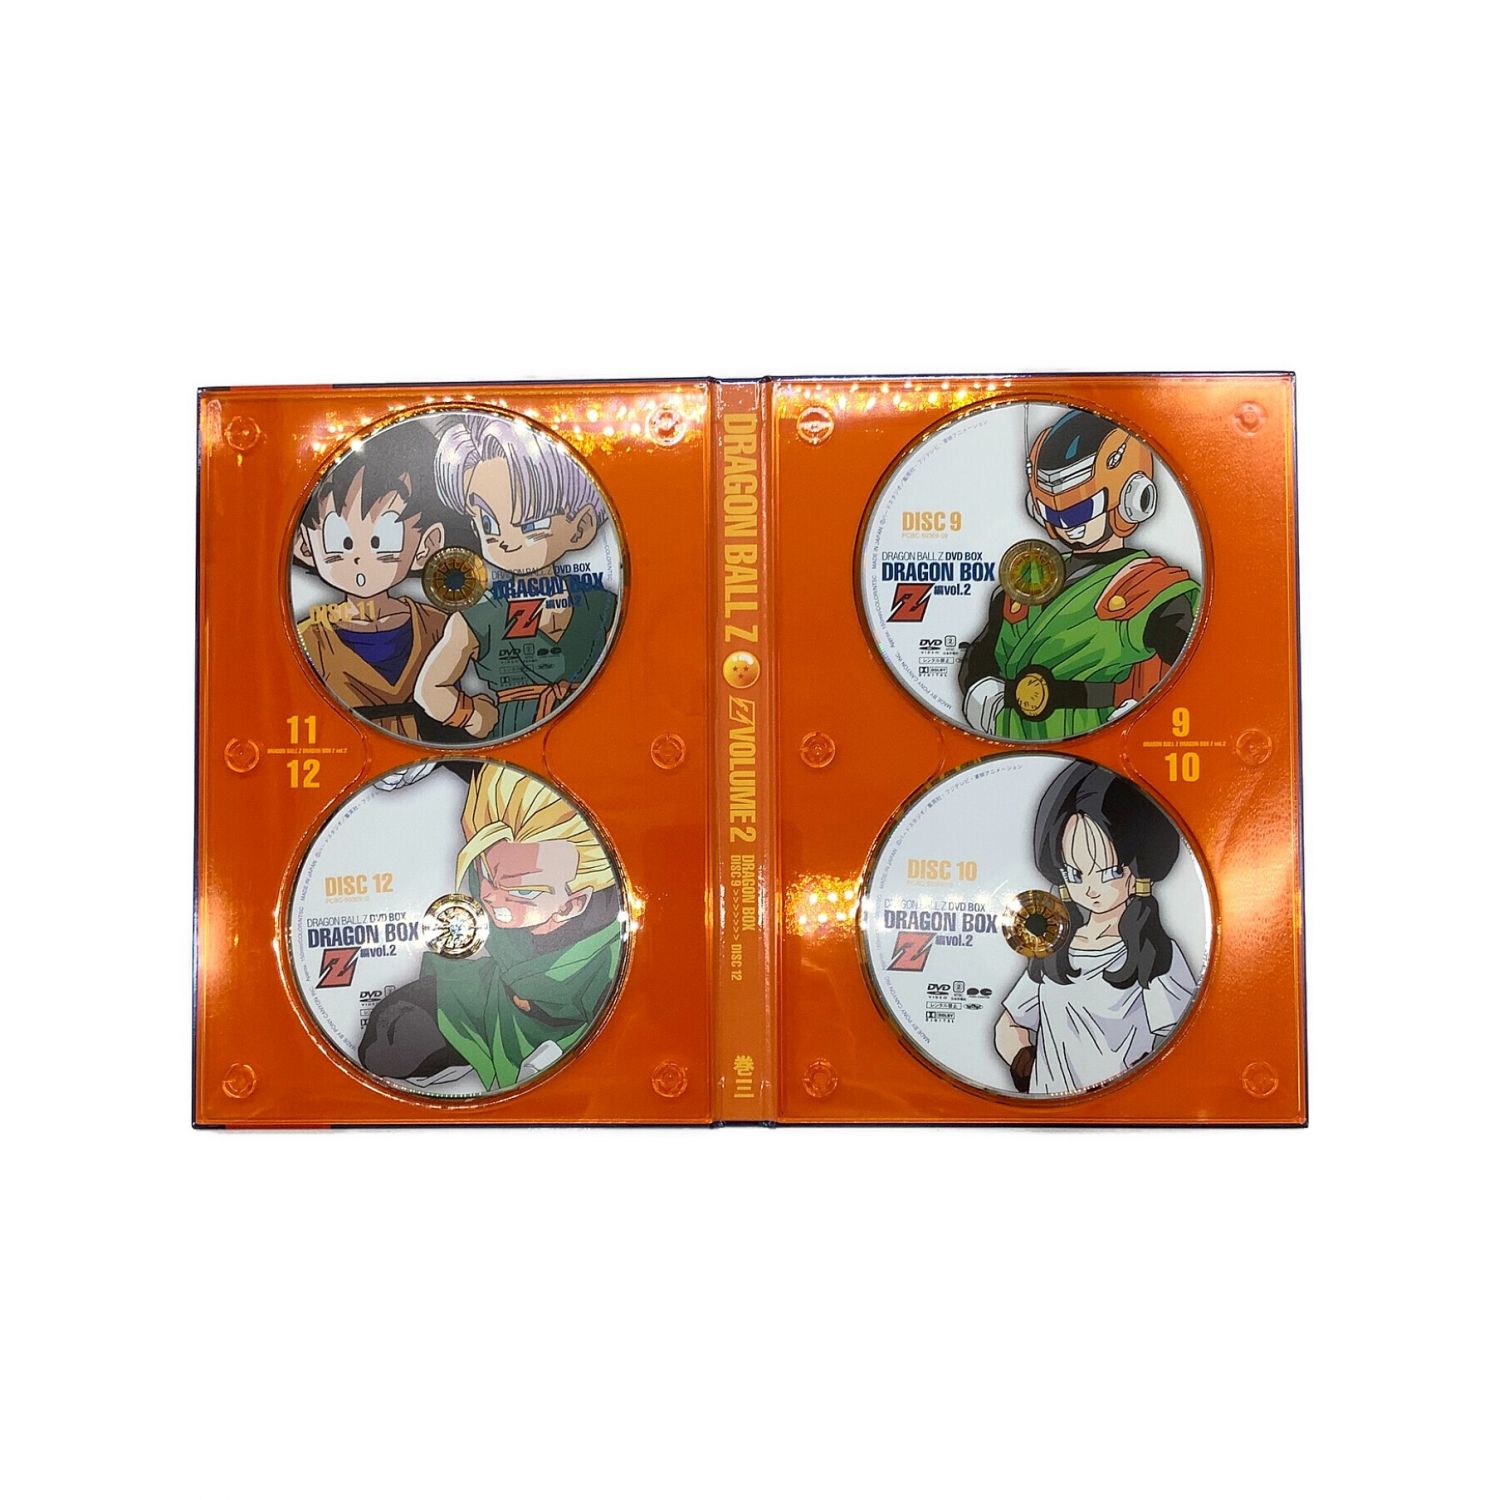 DRAGON BALL Z DVD-BOX DRAGON BOX Z編 1＆2